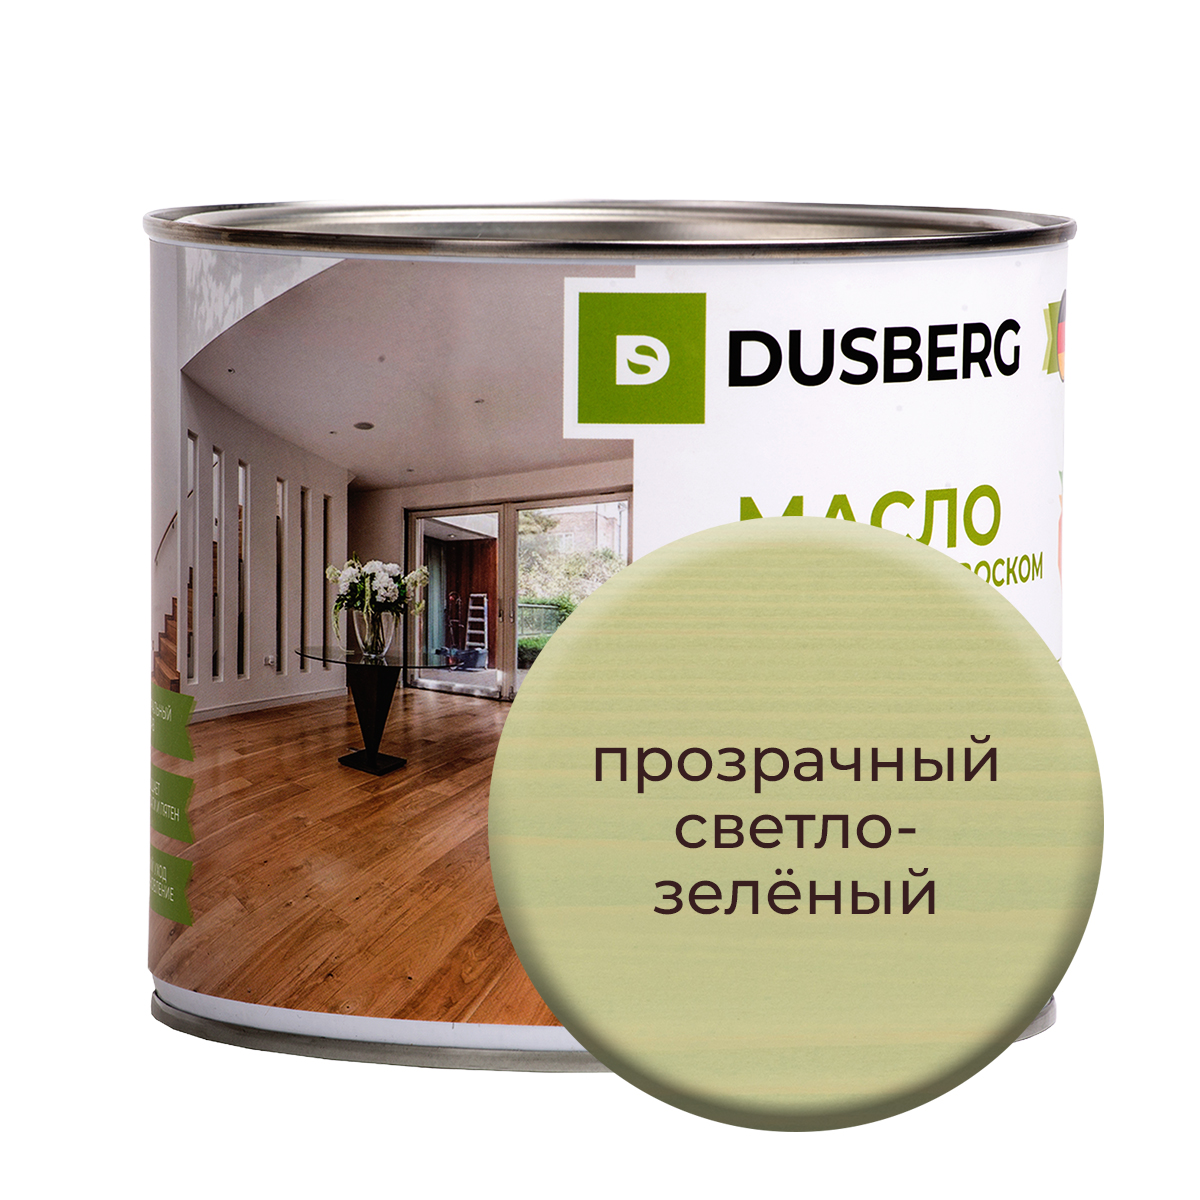 Масло Dusberg для стен на бесцветной основе, 750 мл Прозрачный светло-зеленый масло dusberg для дерева на бесцветной основе 750 мл голдохор